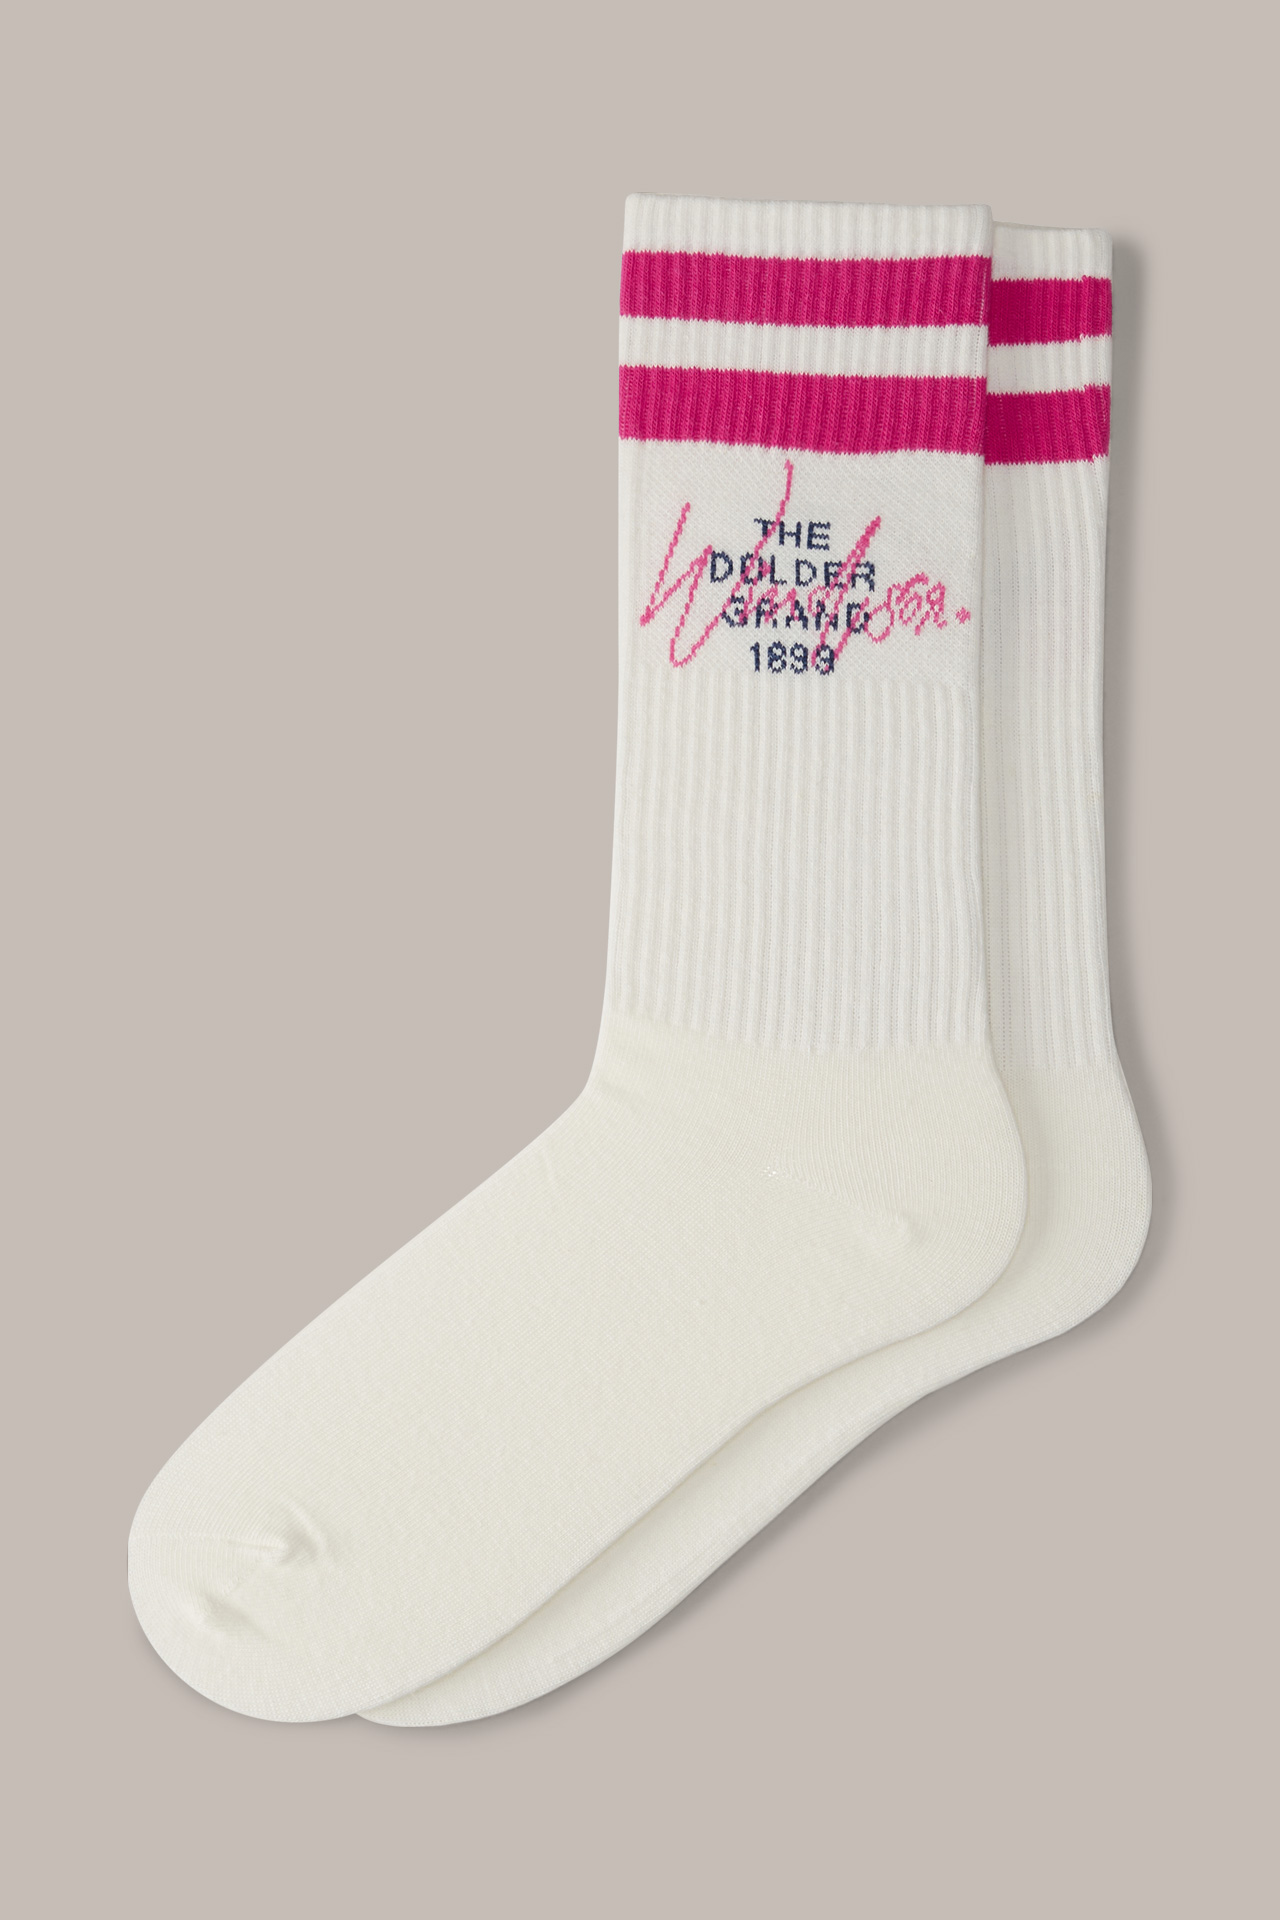 Socken in Weiß-Pink